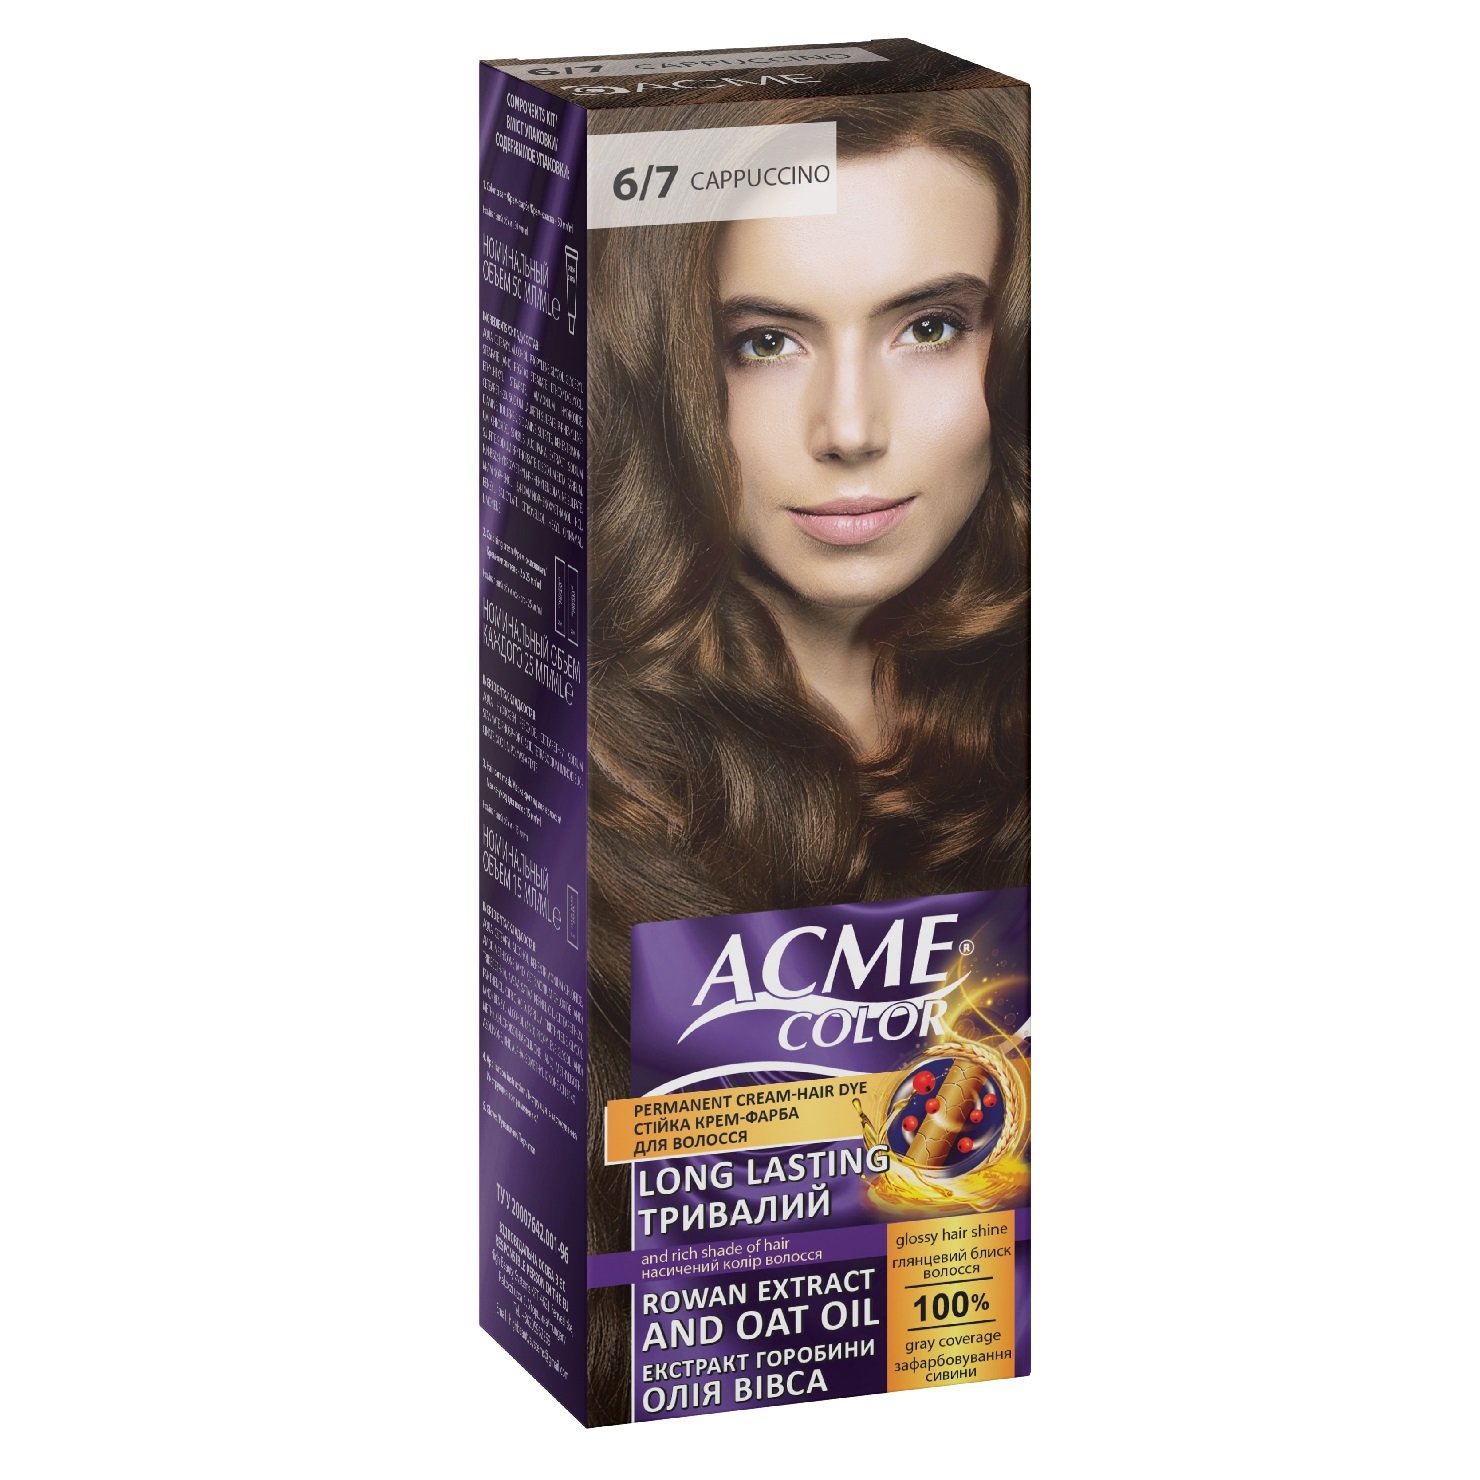 Крем-фарба для волосся Acme Color EXP, відтінок 6/7 (Капучіно), 115 мл - фото 1